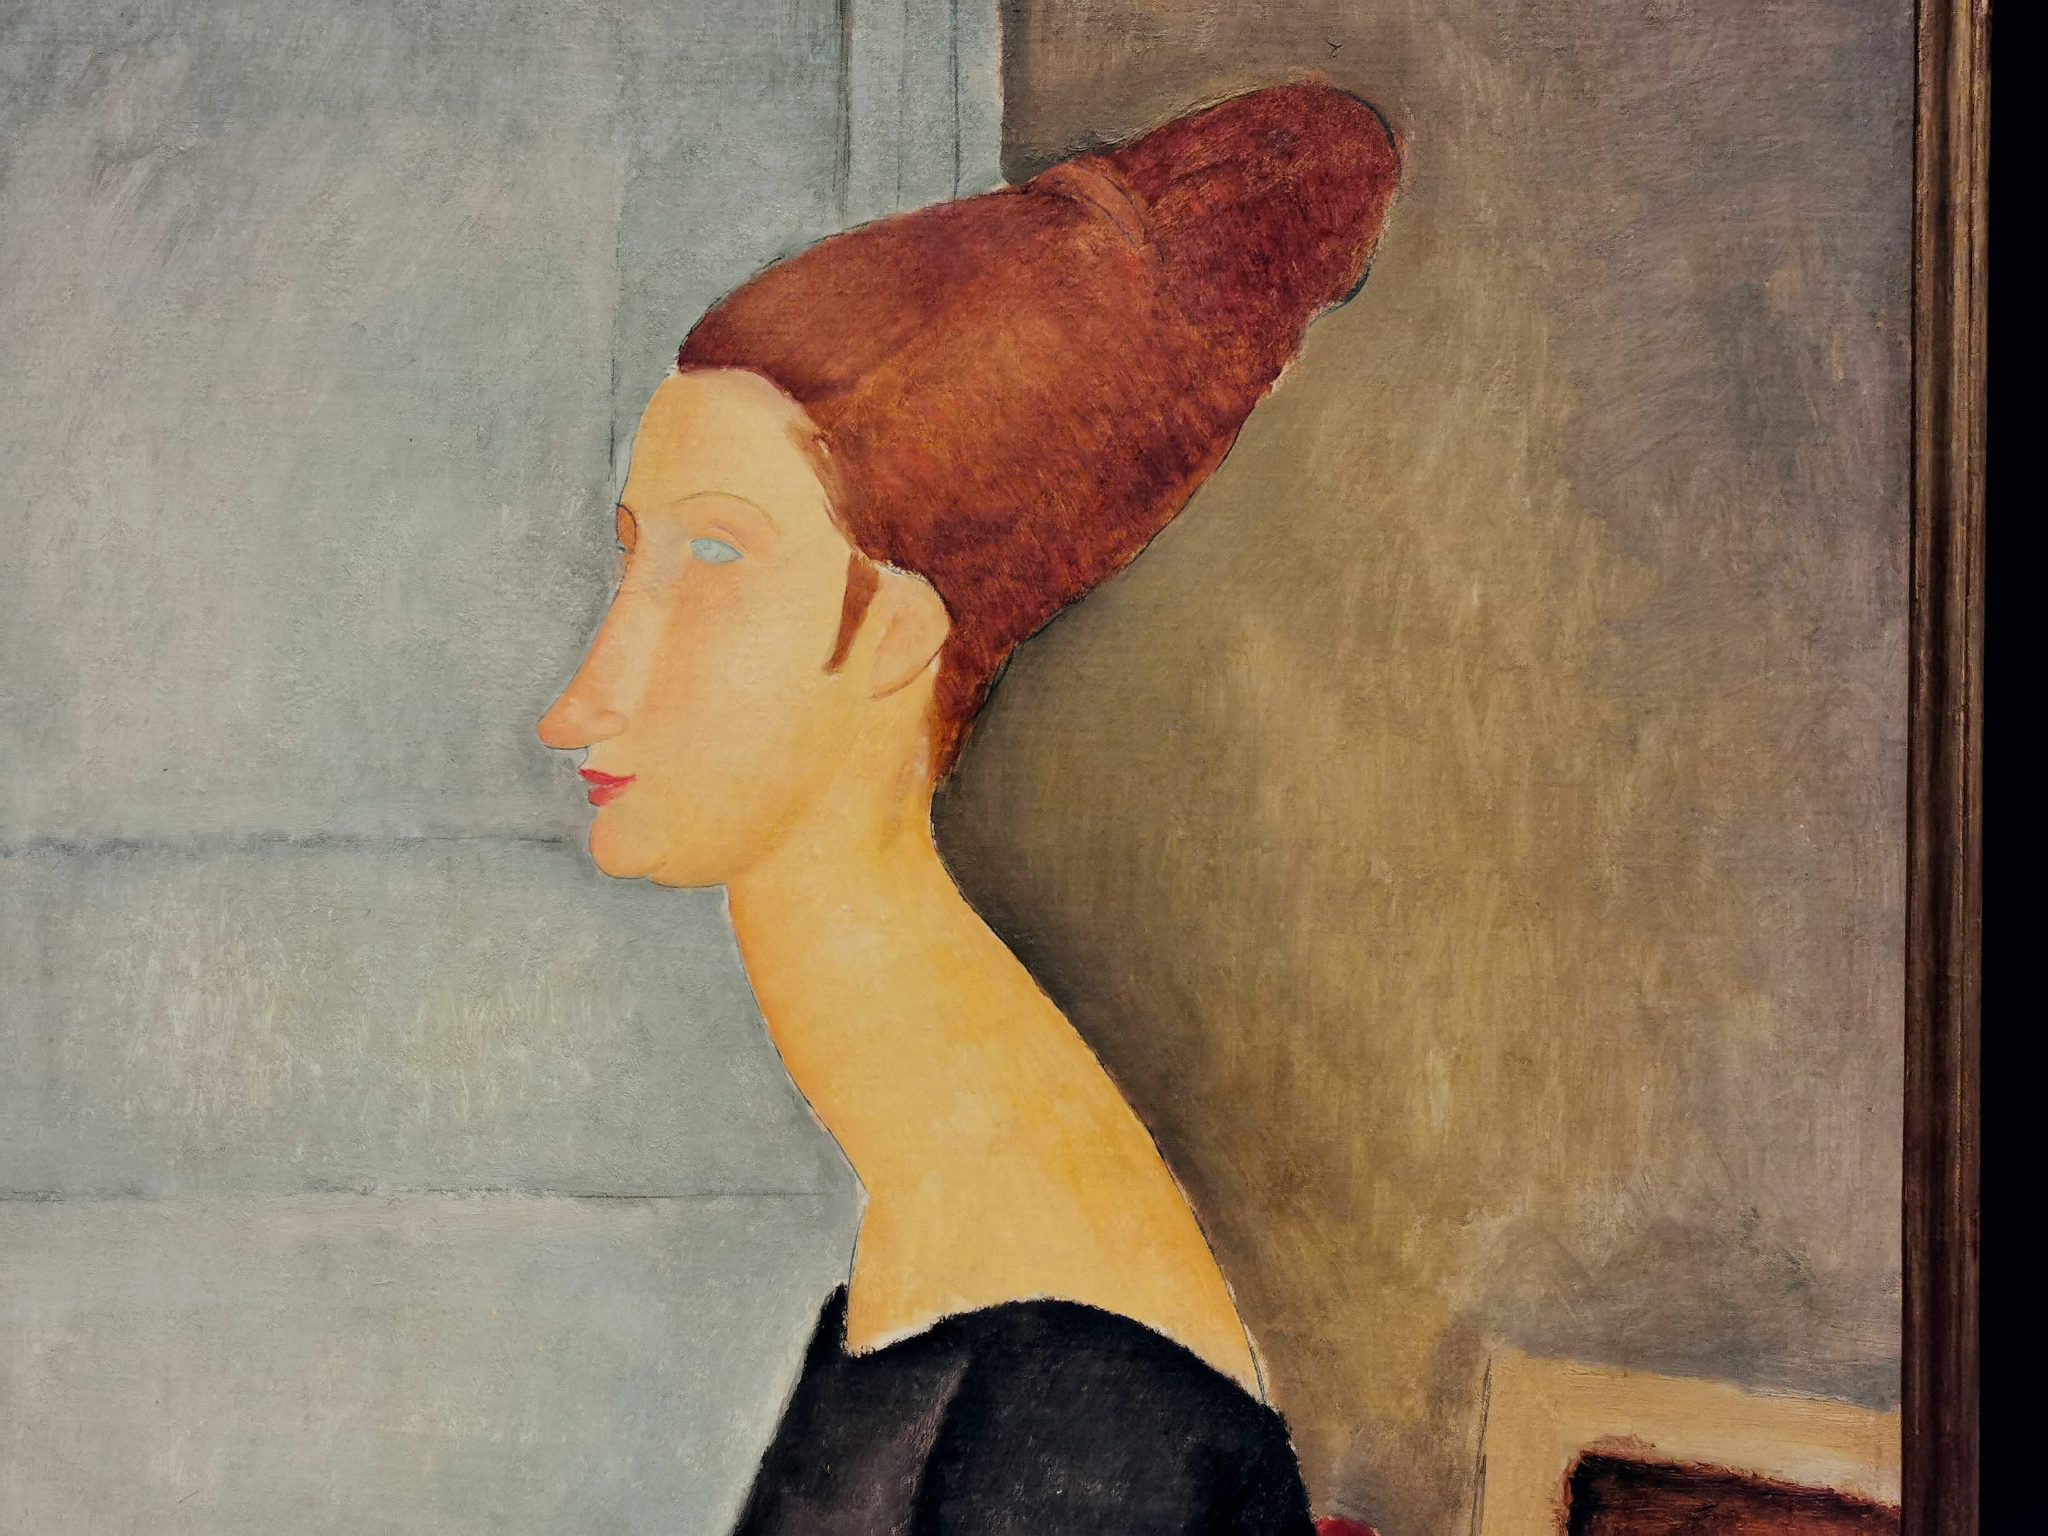 L’Italia svende Amedeo Modigliani. Che nel centenario sarà celebrato in Messico e Austria